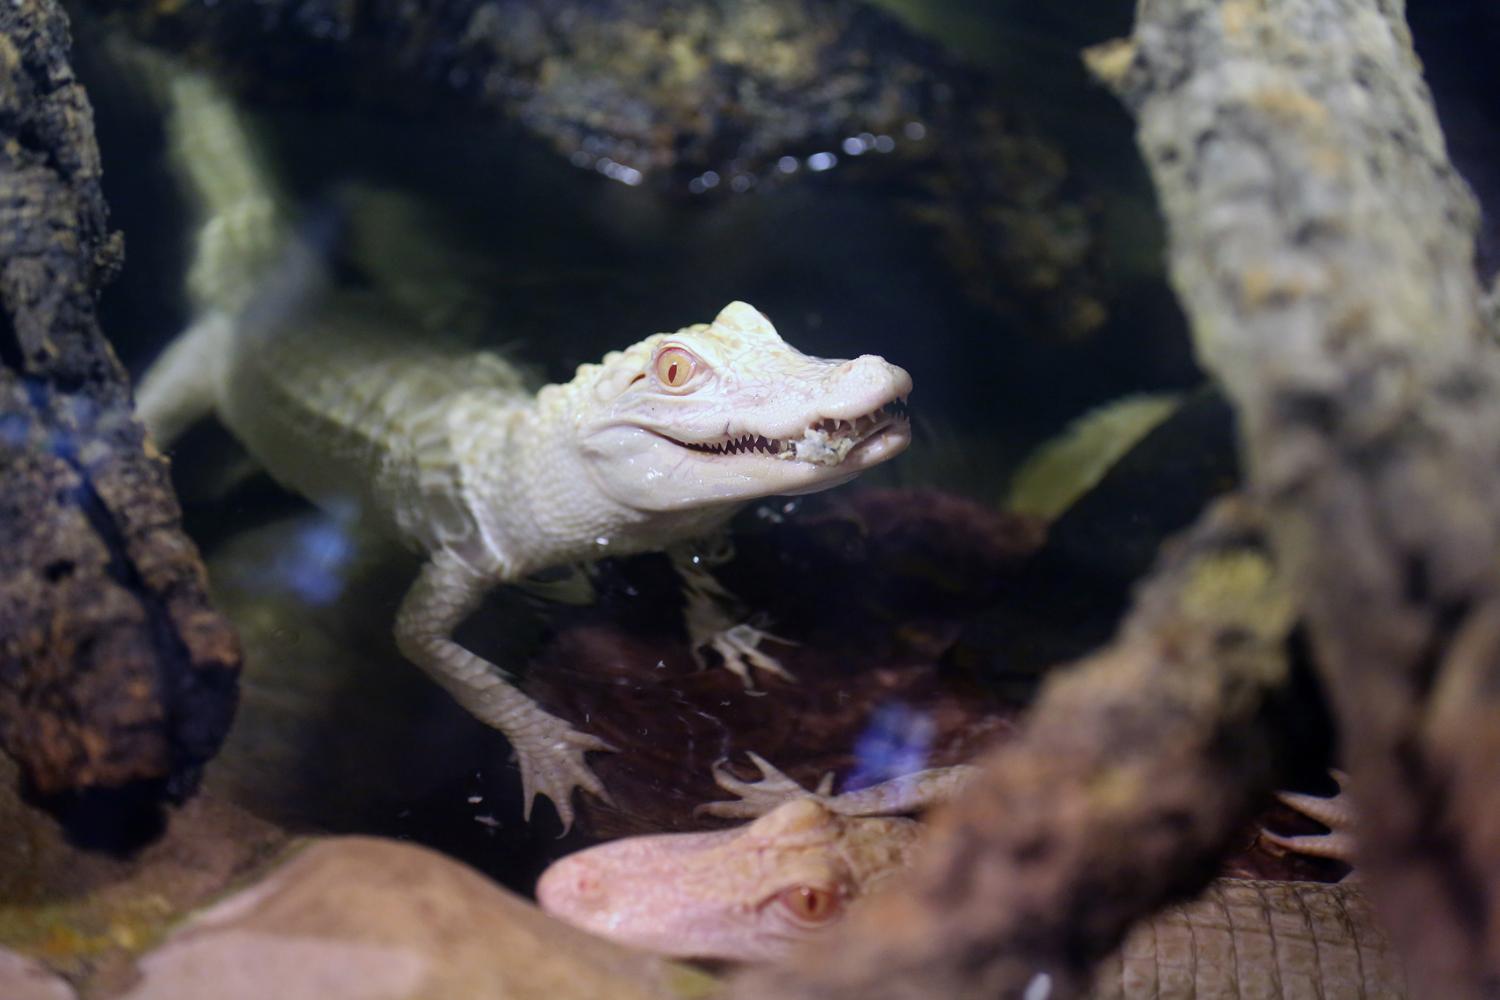 Feb. 13. 2014. Two 18-month old albino alligators are presented at the Tropical aquarium in Paris.